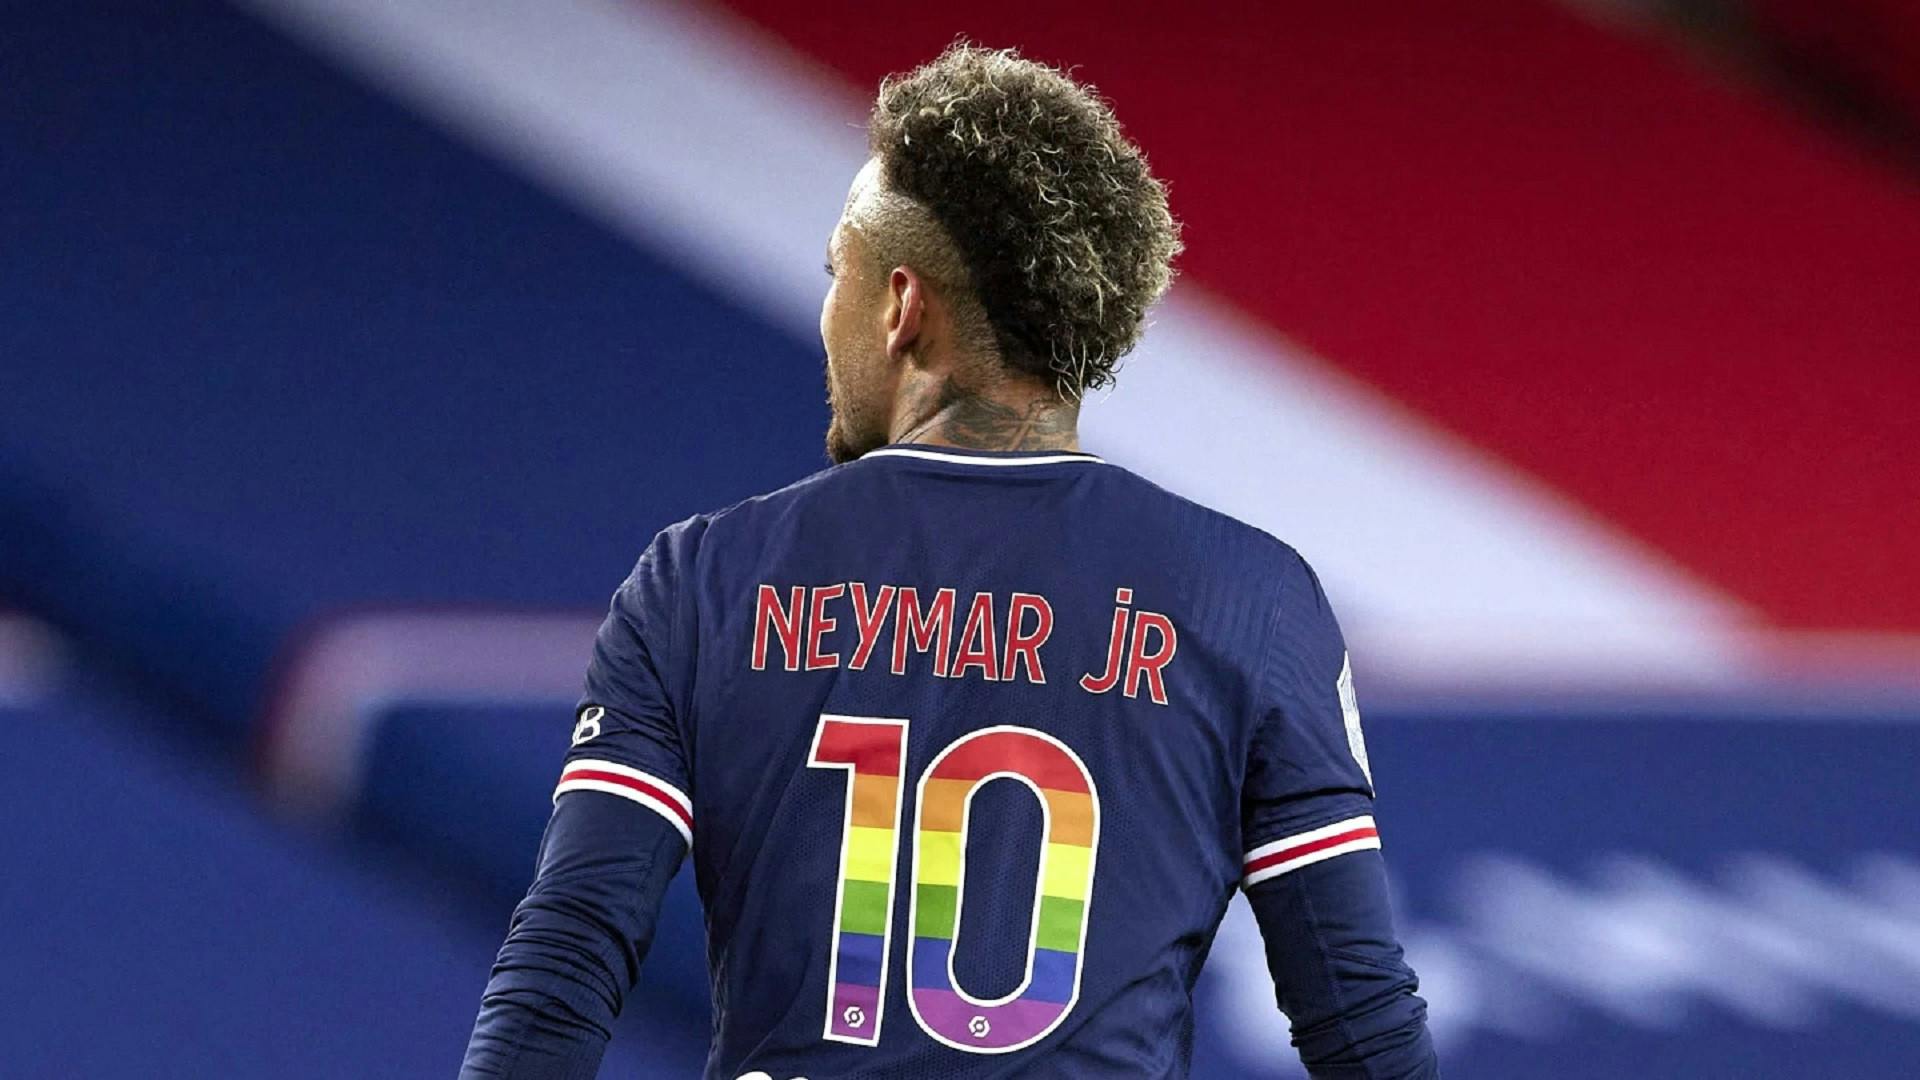 Neymar chi? Il PSG ha già riassegnato la sua 10 (VIDEO)